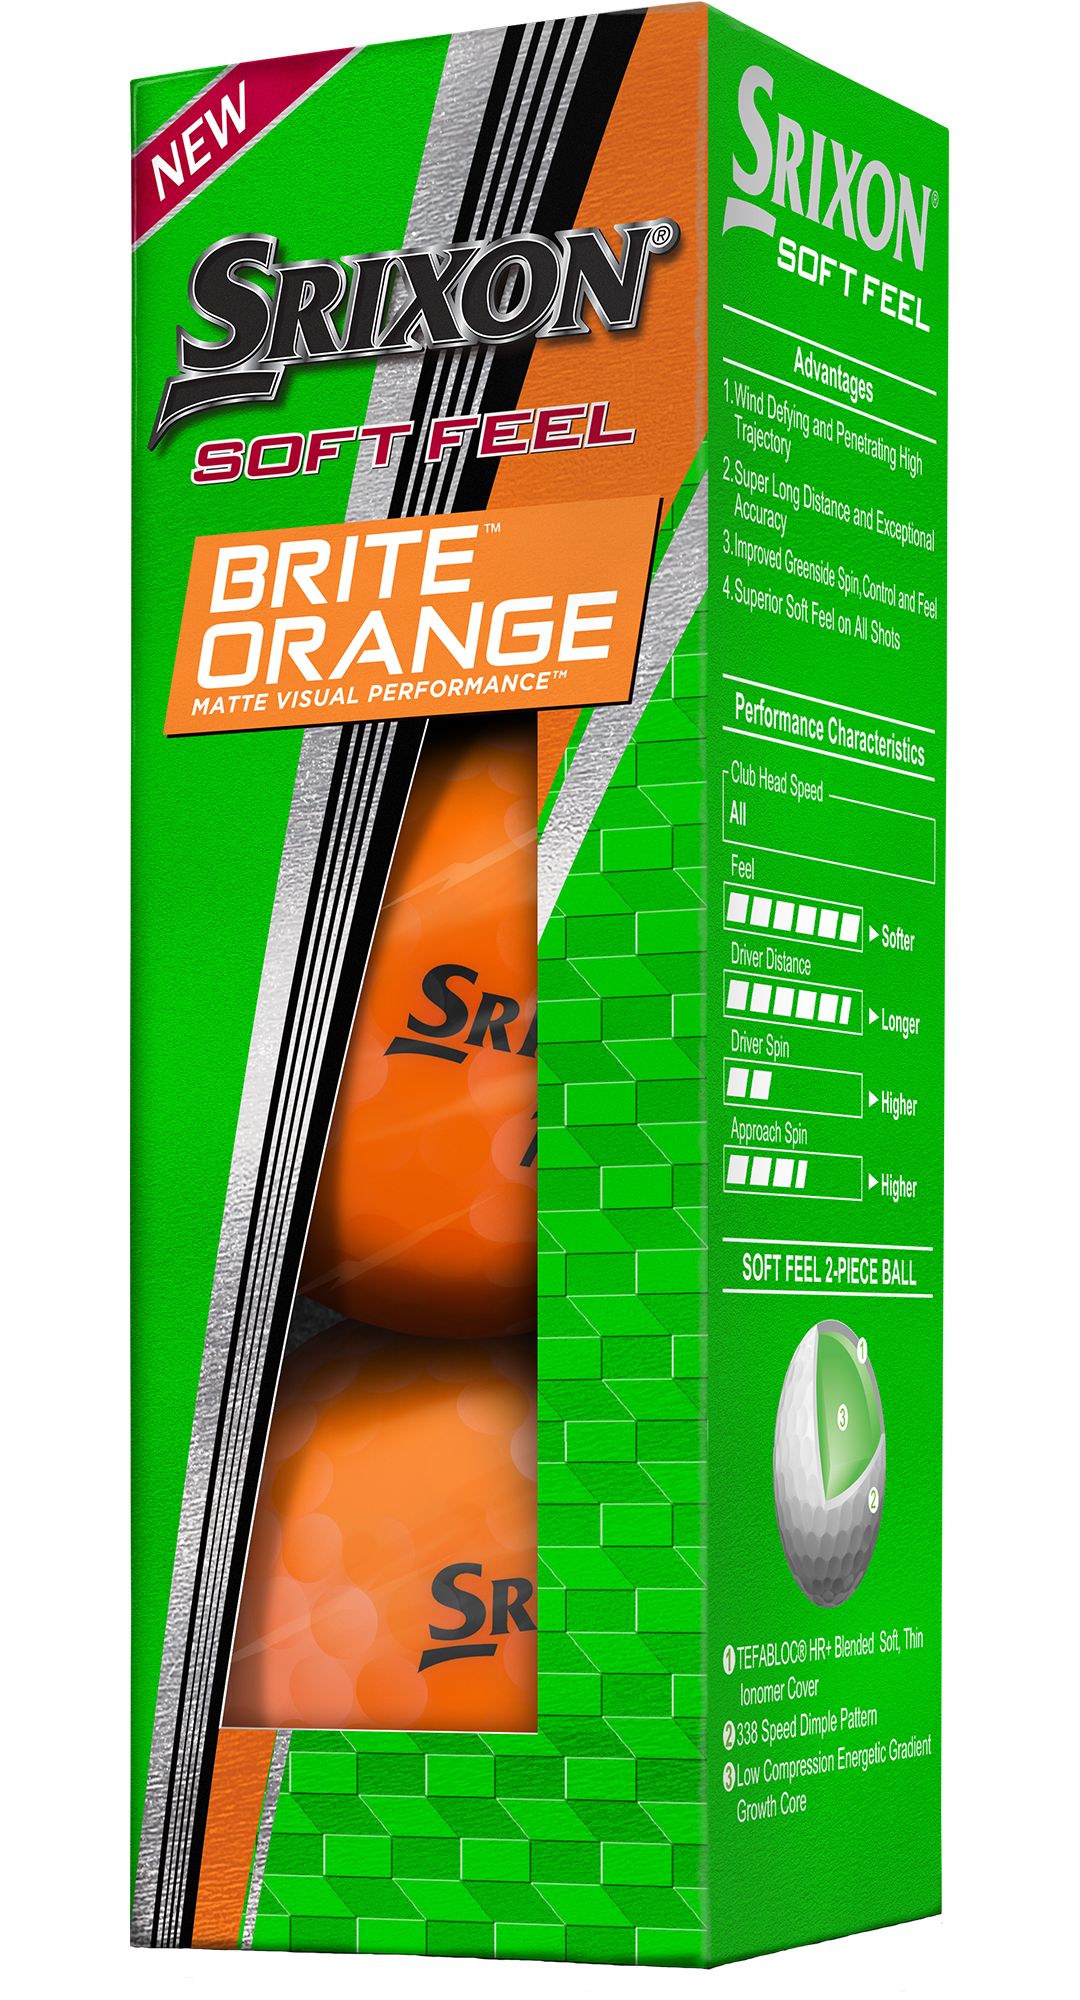 Srixon 2018 Soft Feel 11 Brite Orange Golf Balls 4